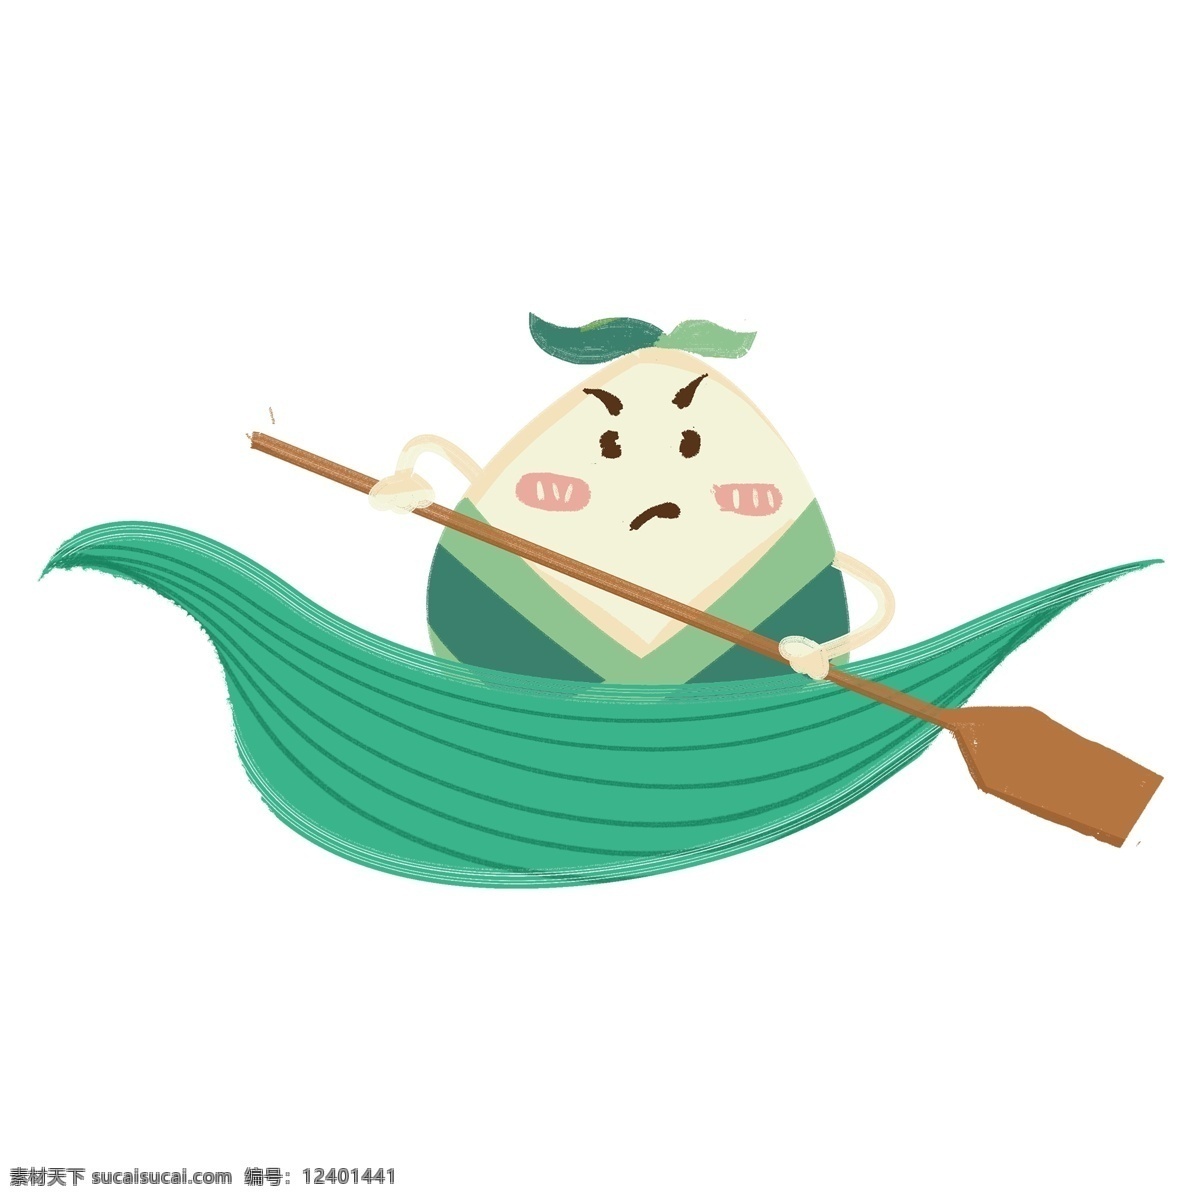 可爱 粽子 船 装饰 元素 装饰元素 粽子叶 船桨 微笑 表情 端午 节日 叶子